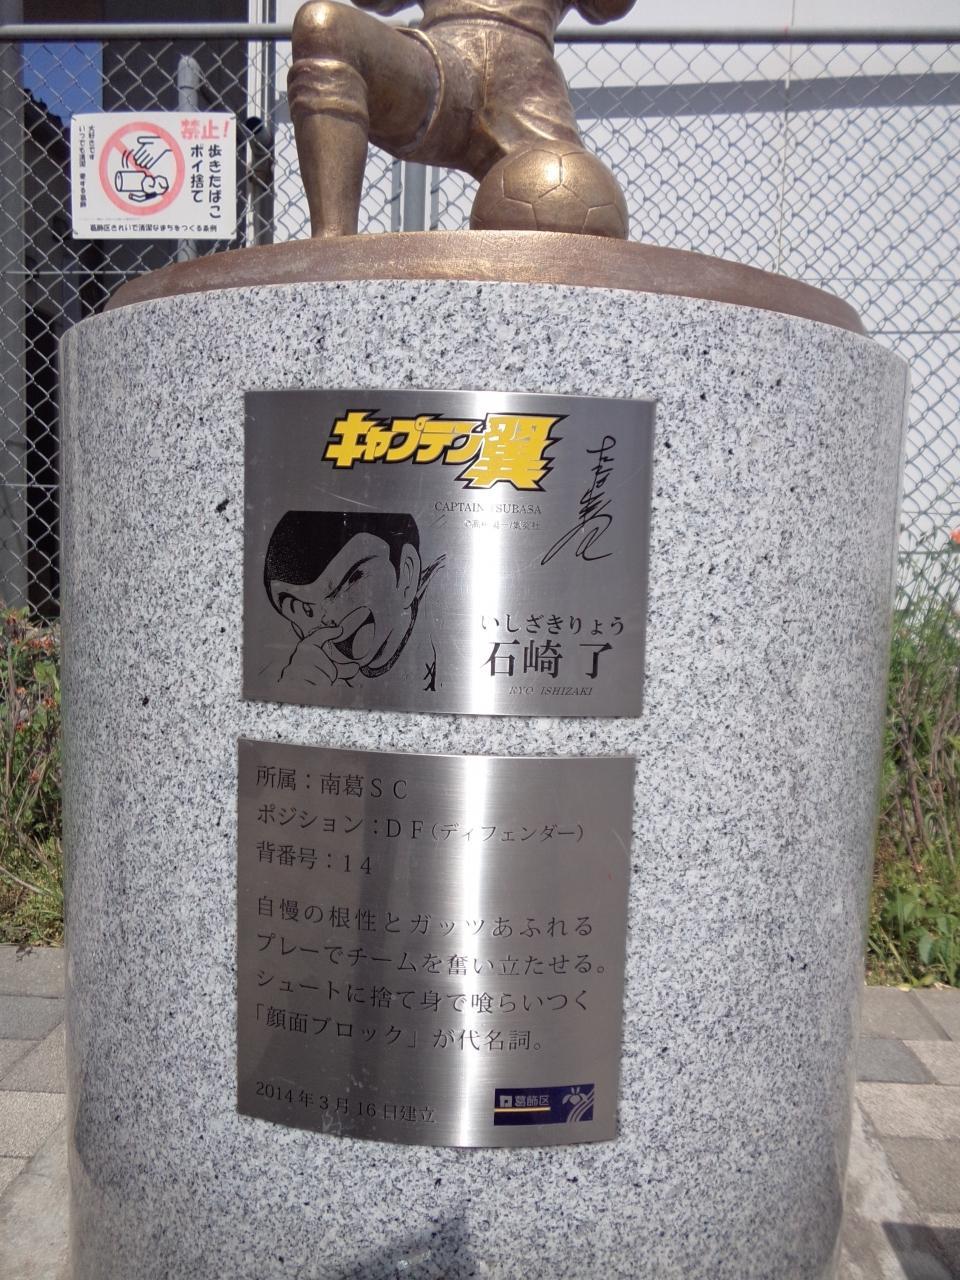 18キャプテン翼 放送記念 葛飾区キャプテン翼銅像めぐり 東京の旅行記 ブログ By もっちさん フォートラベル